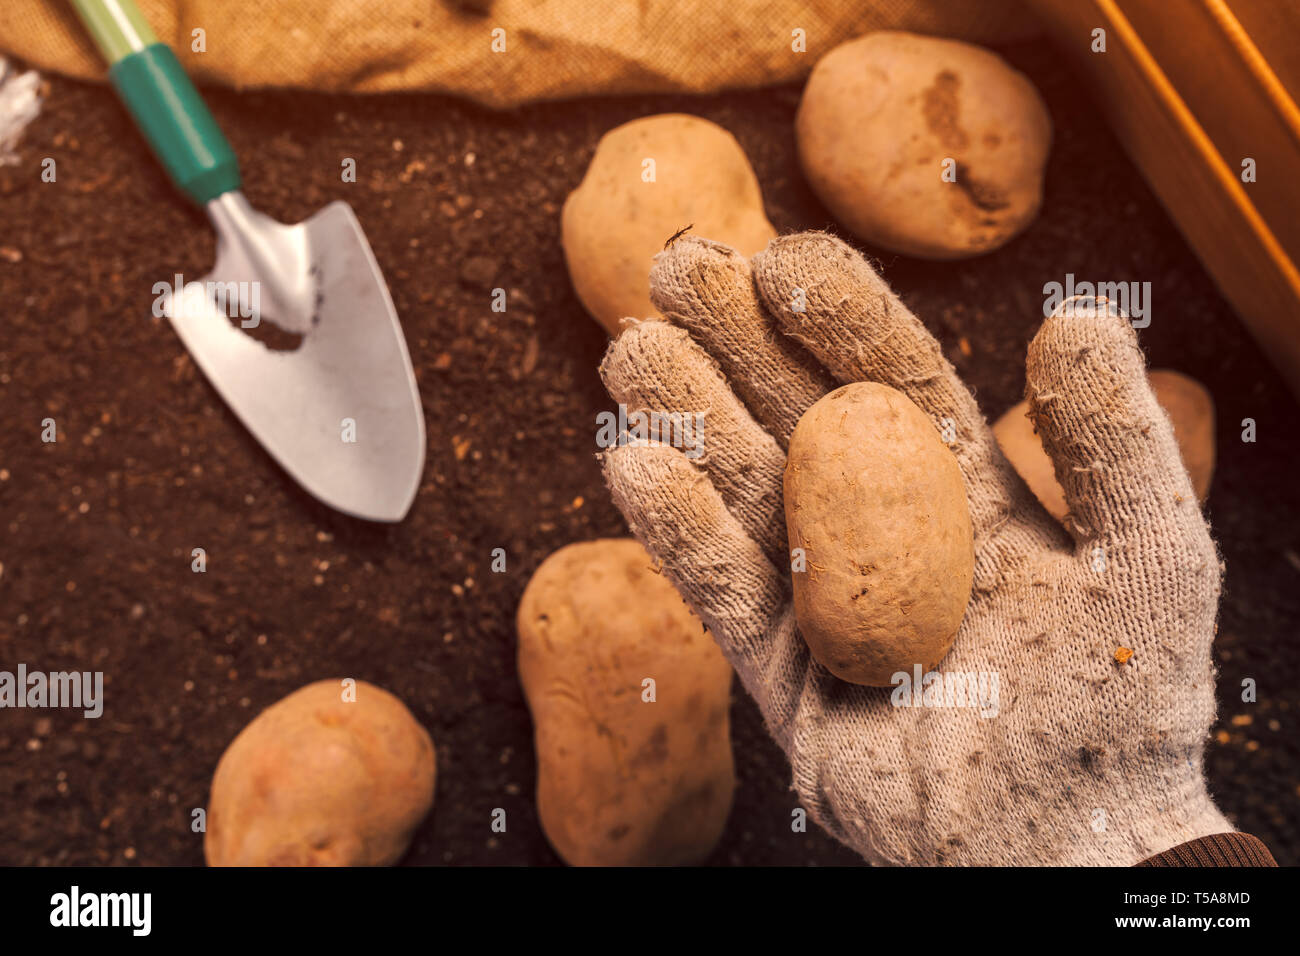 Farmer picking organic homegrown potato tuber from pile of freshly harvested rhizome in vegetable garden Stock Photo